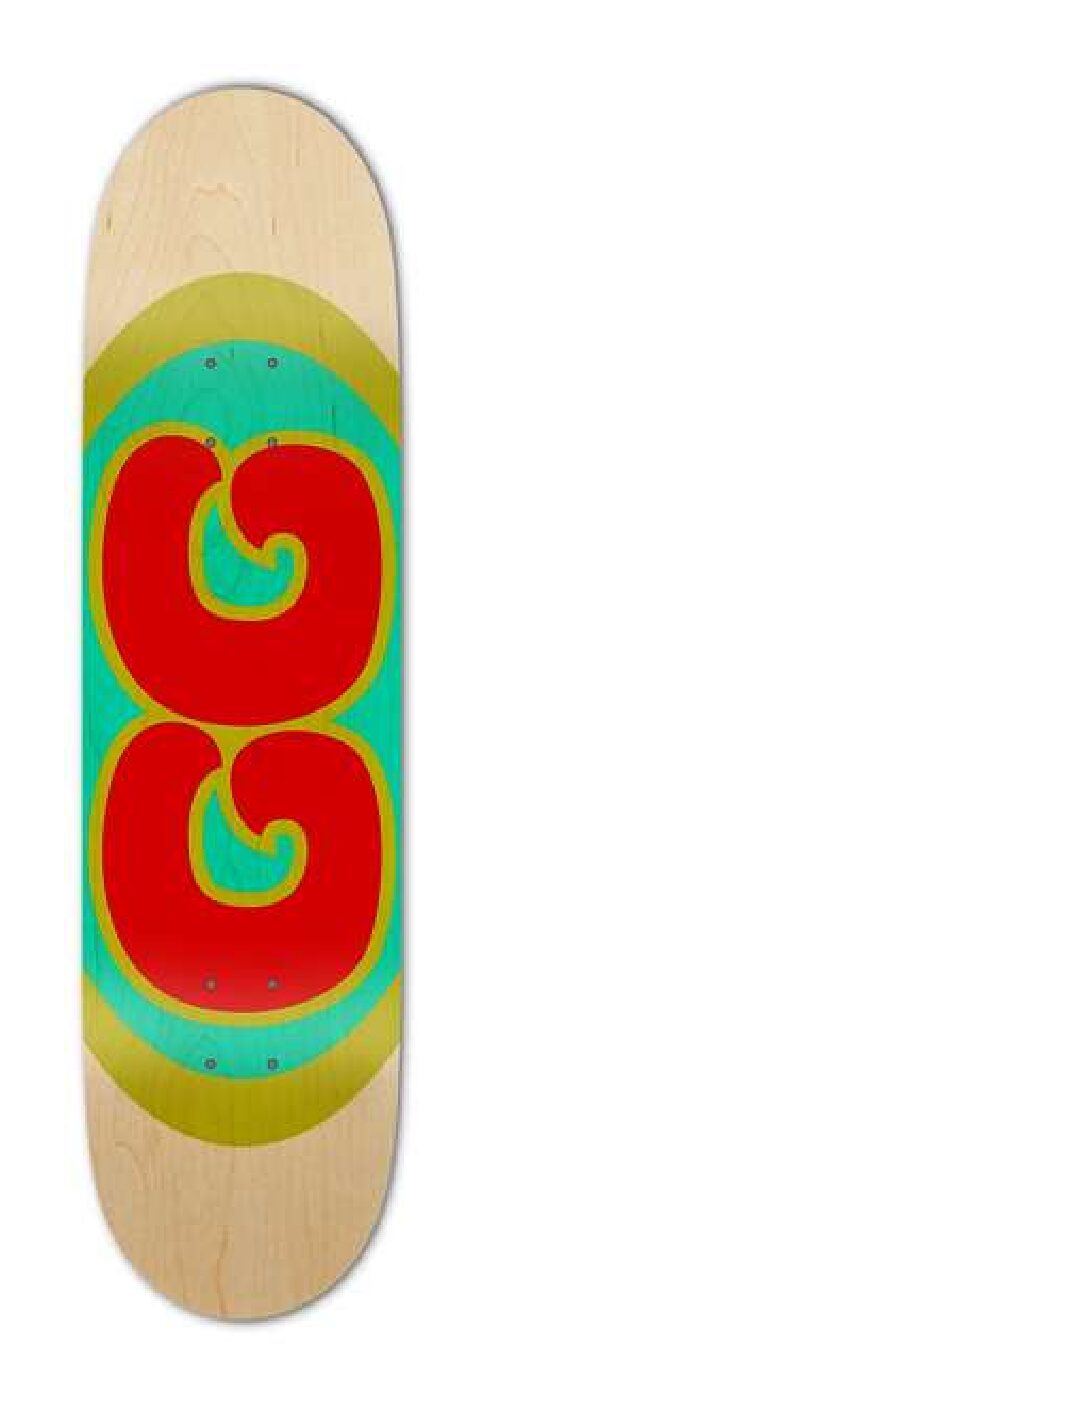 GaiGan Skateboard GG on Natural Wood Finish